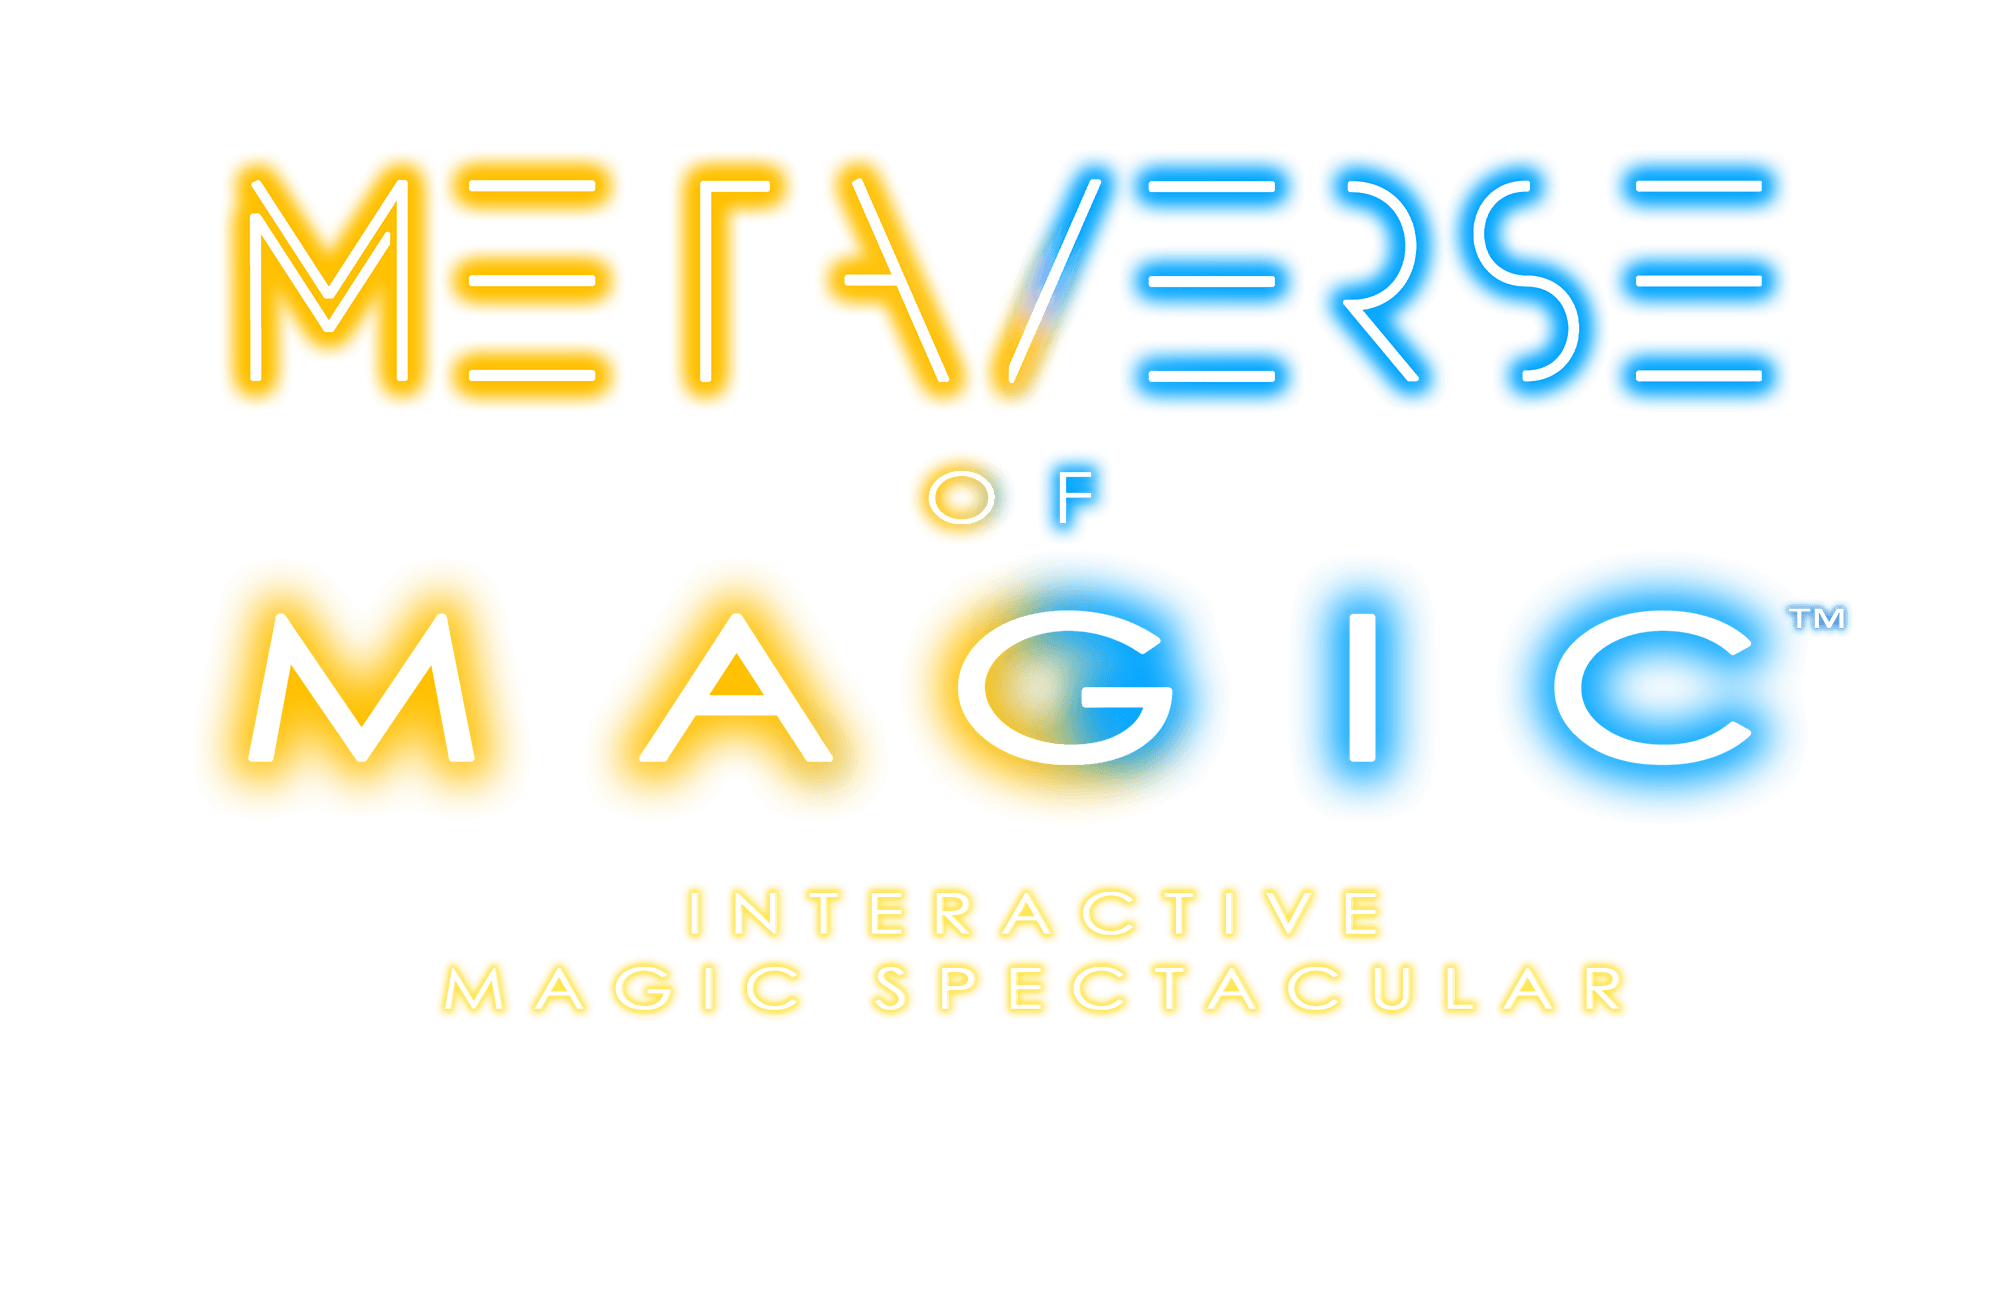 Metaverse of Magic typelogo